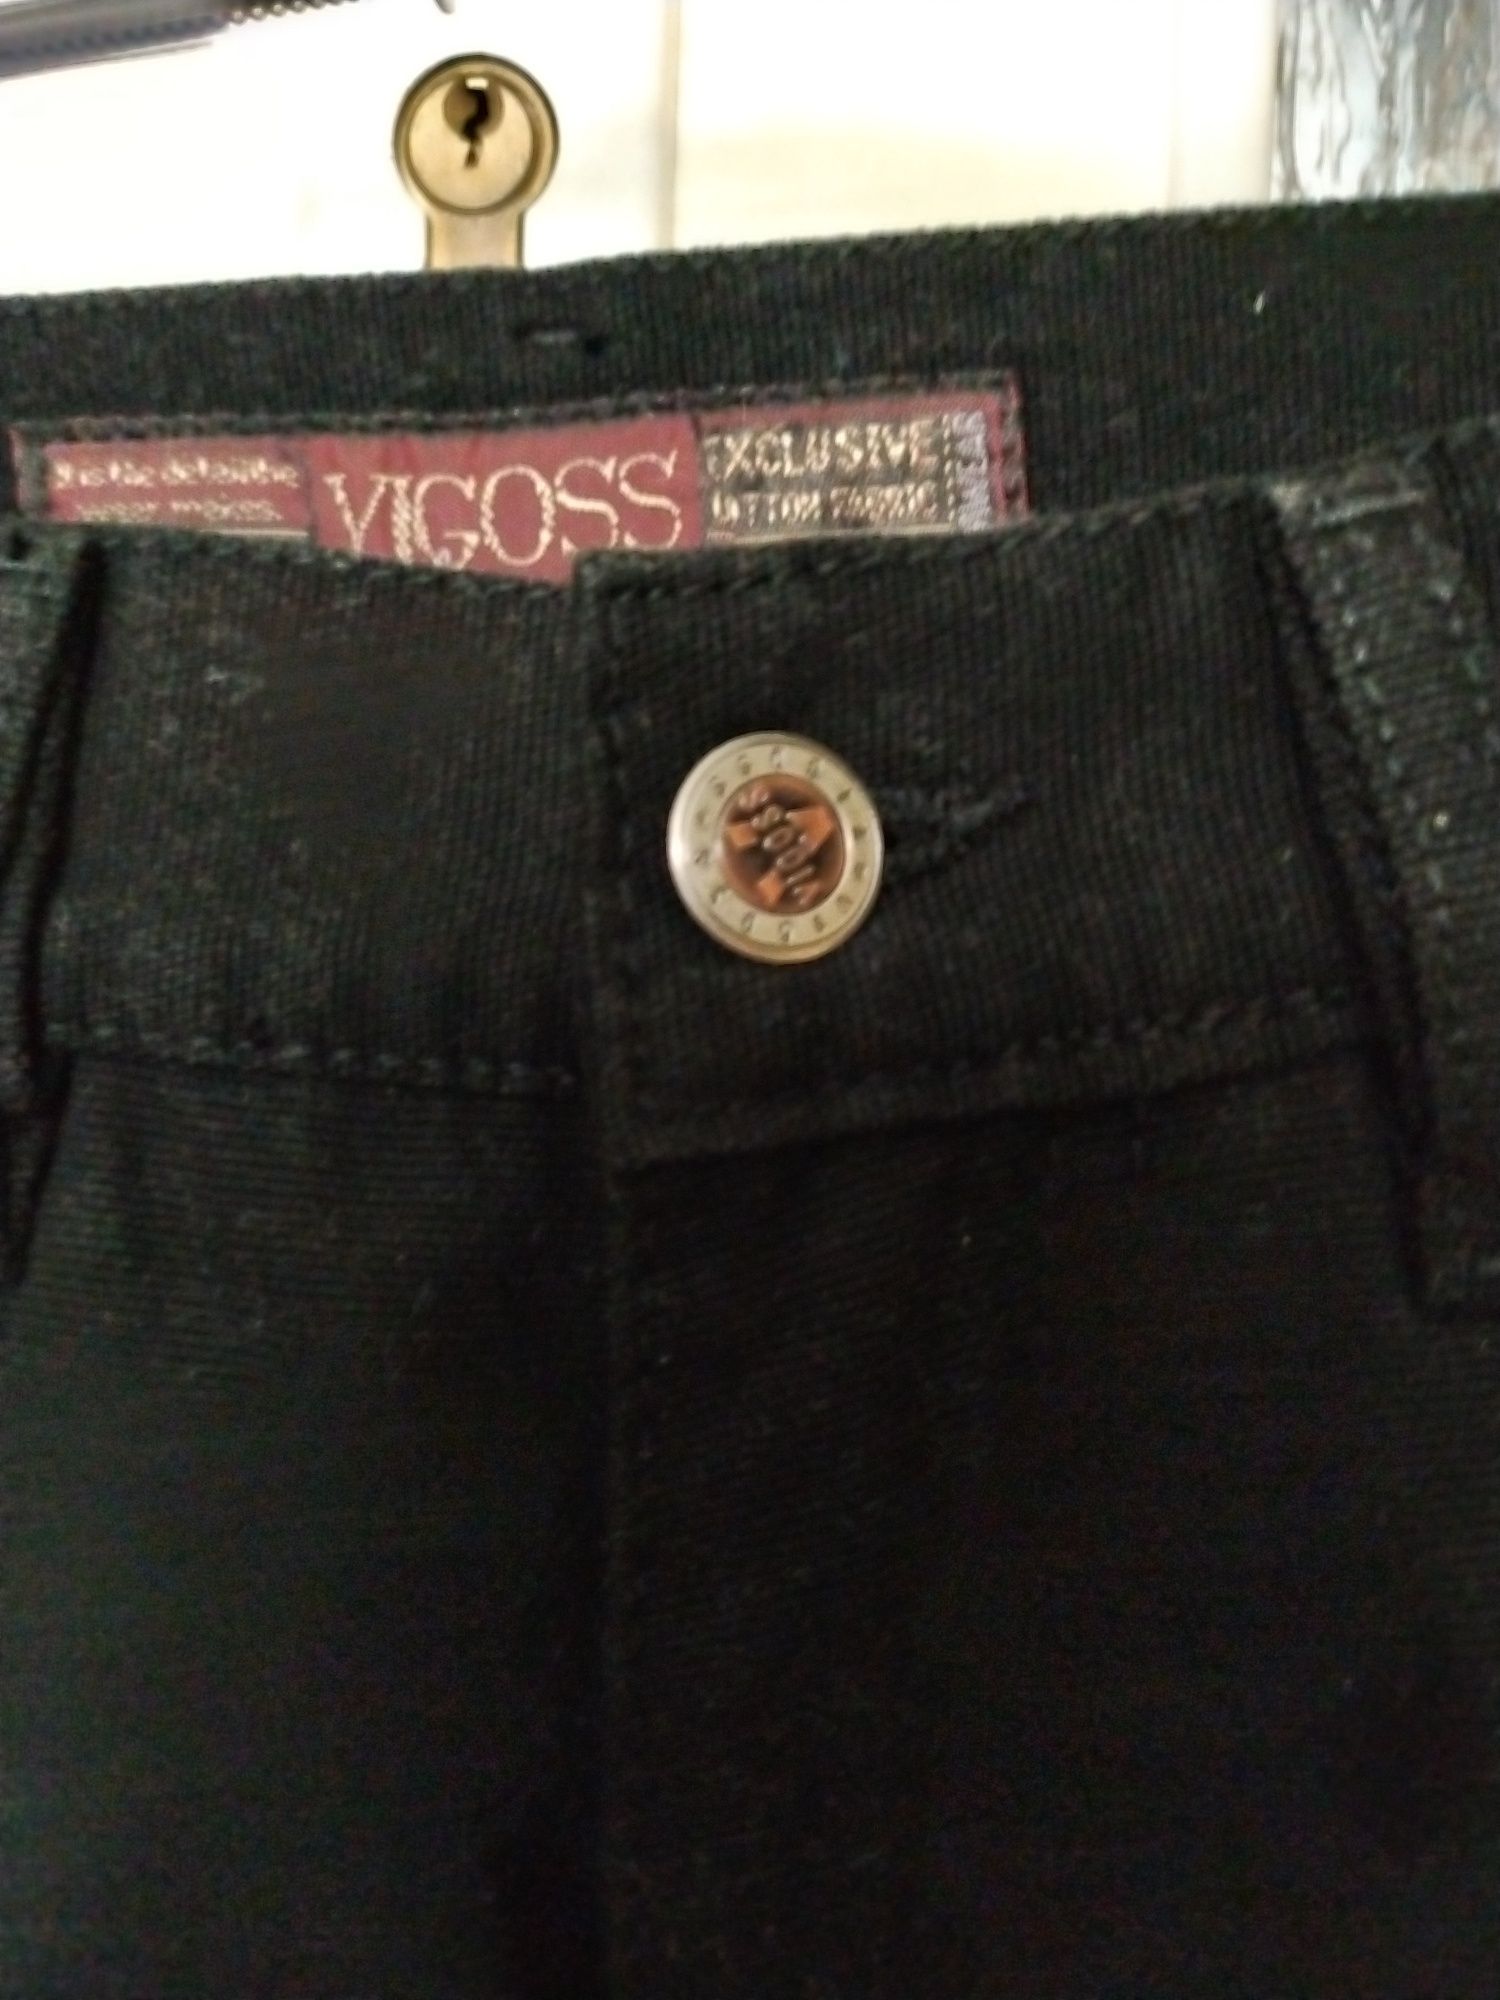 Spodnie marki VIGOSS